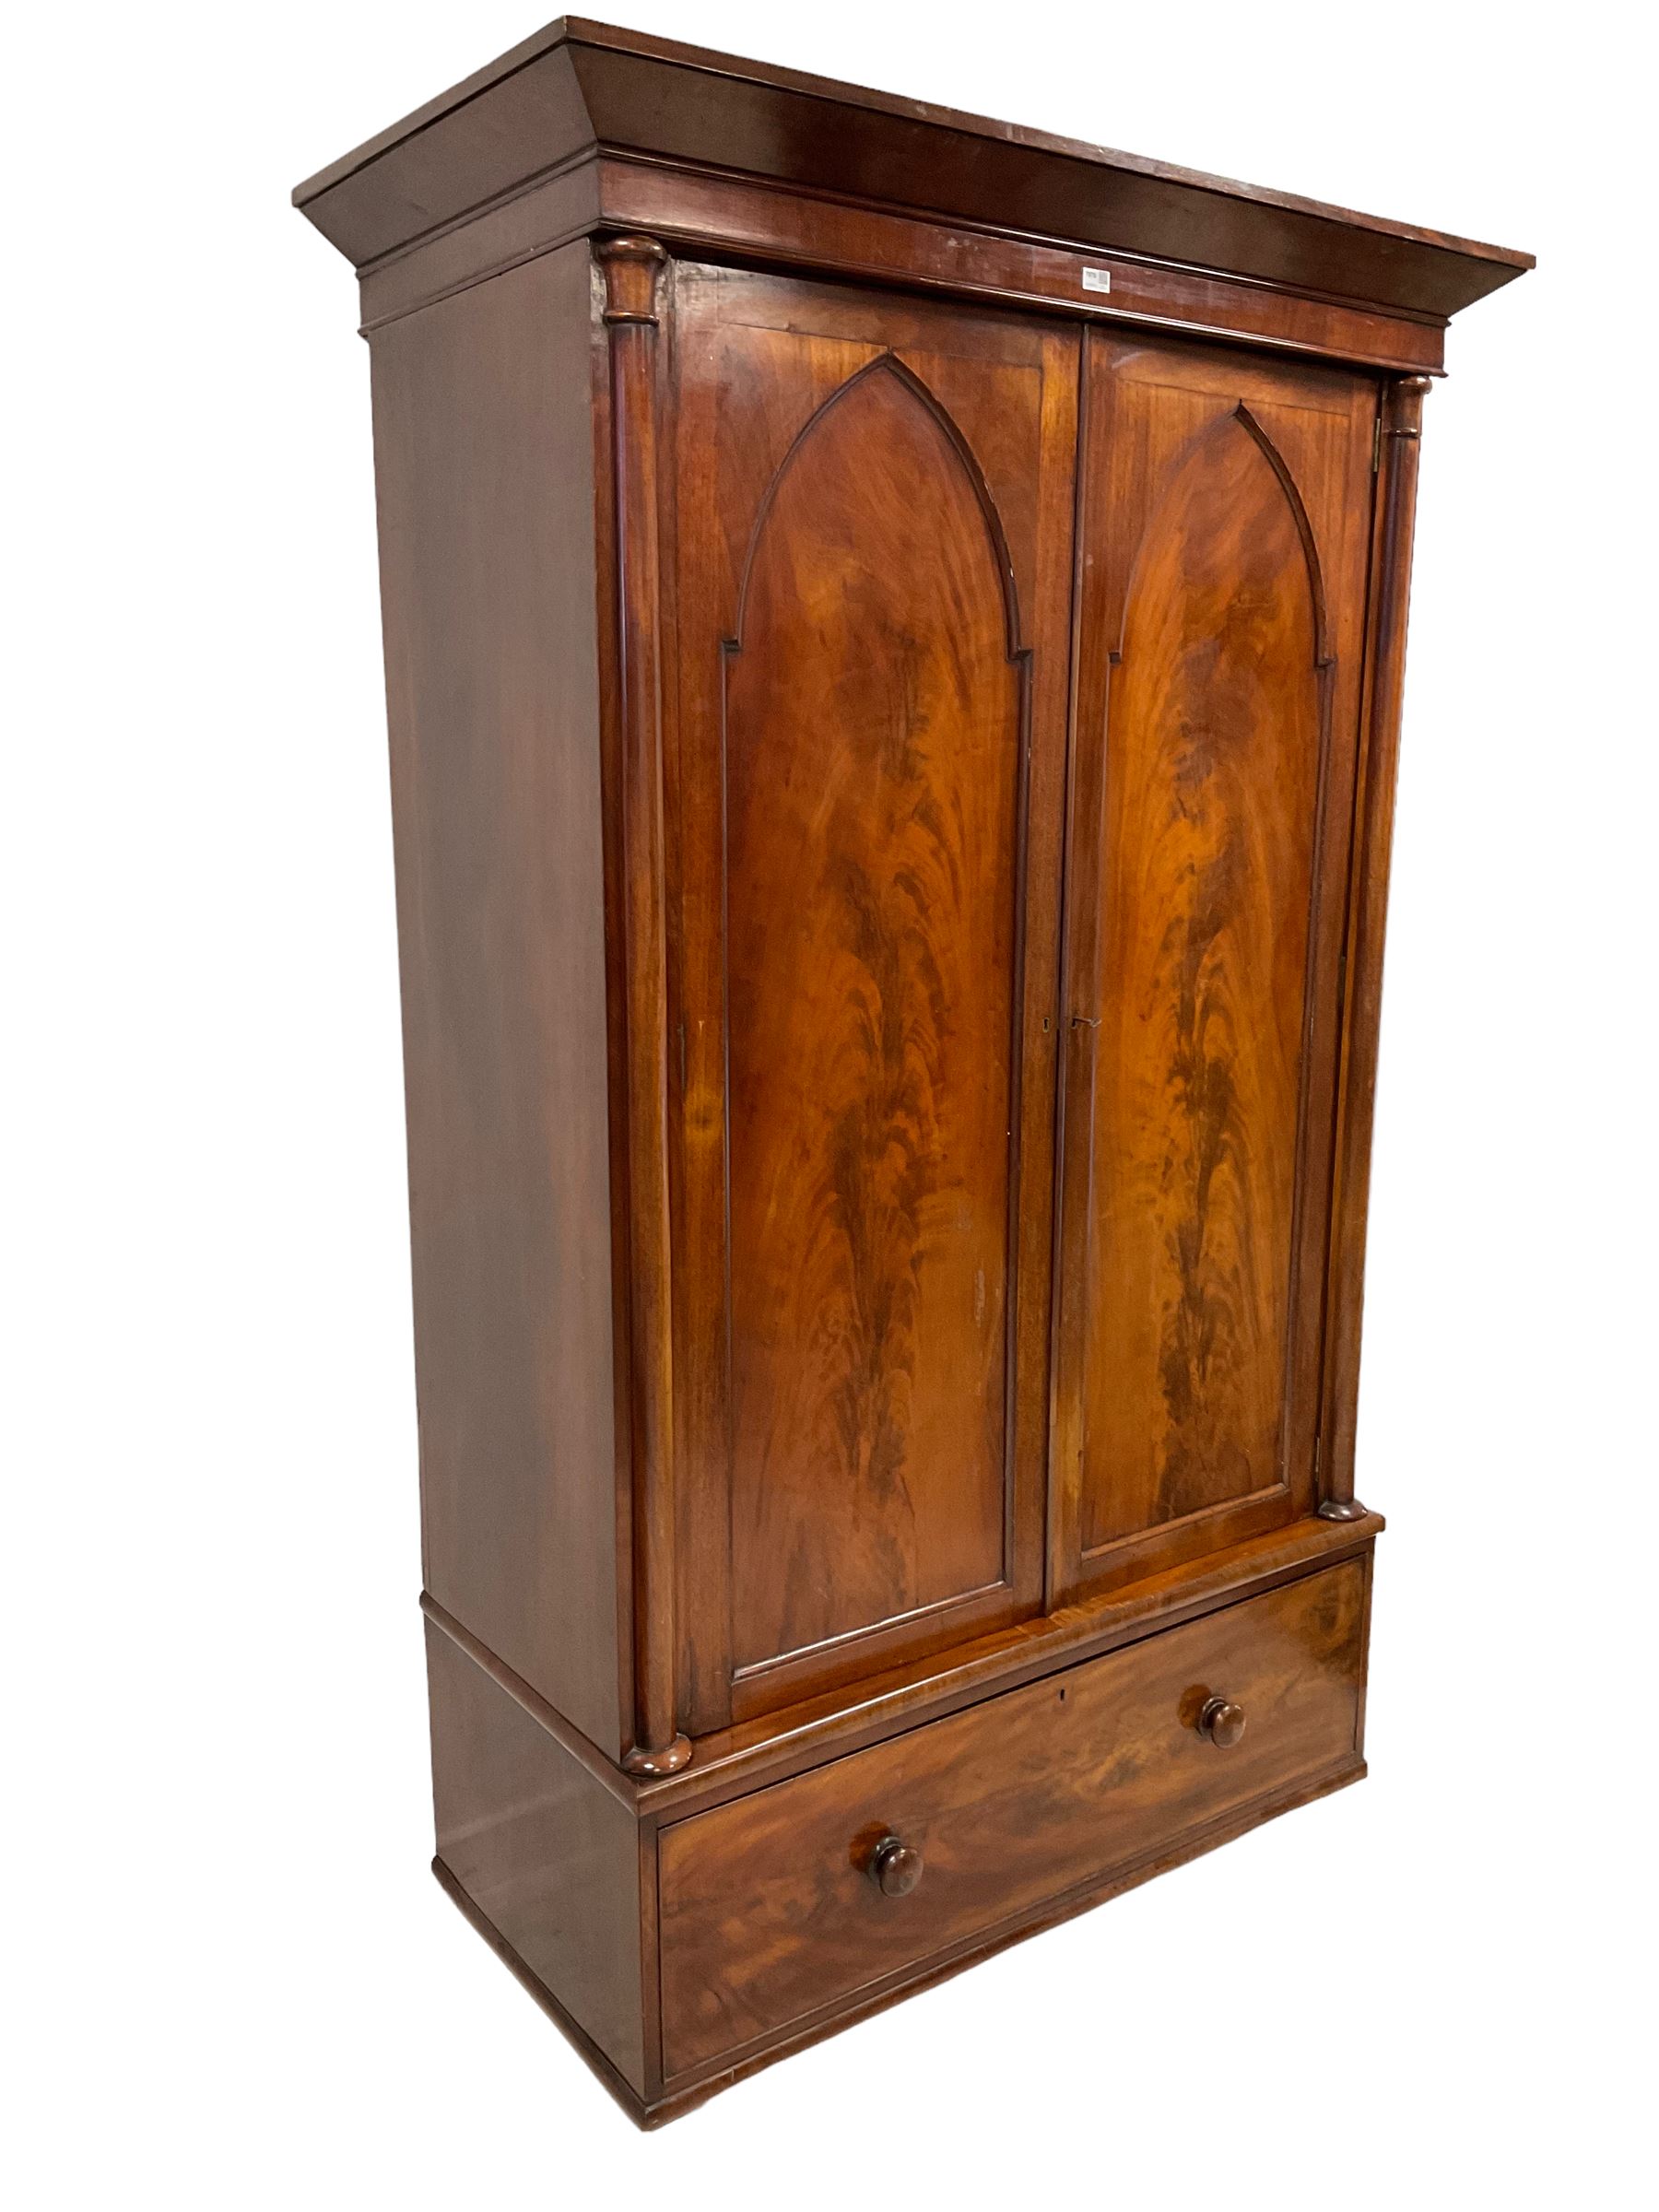 Early 19th century mahogany double wardrobe - Image 2 of 4